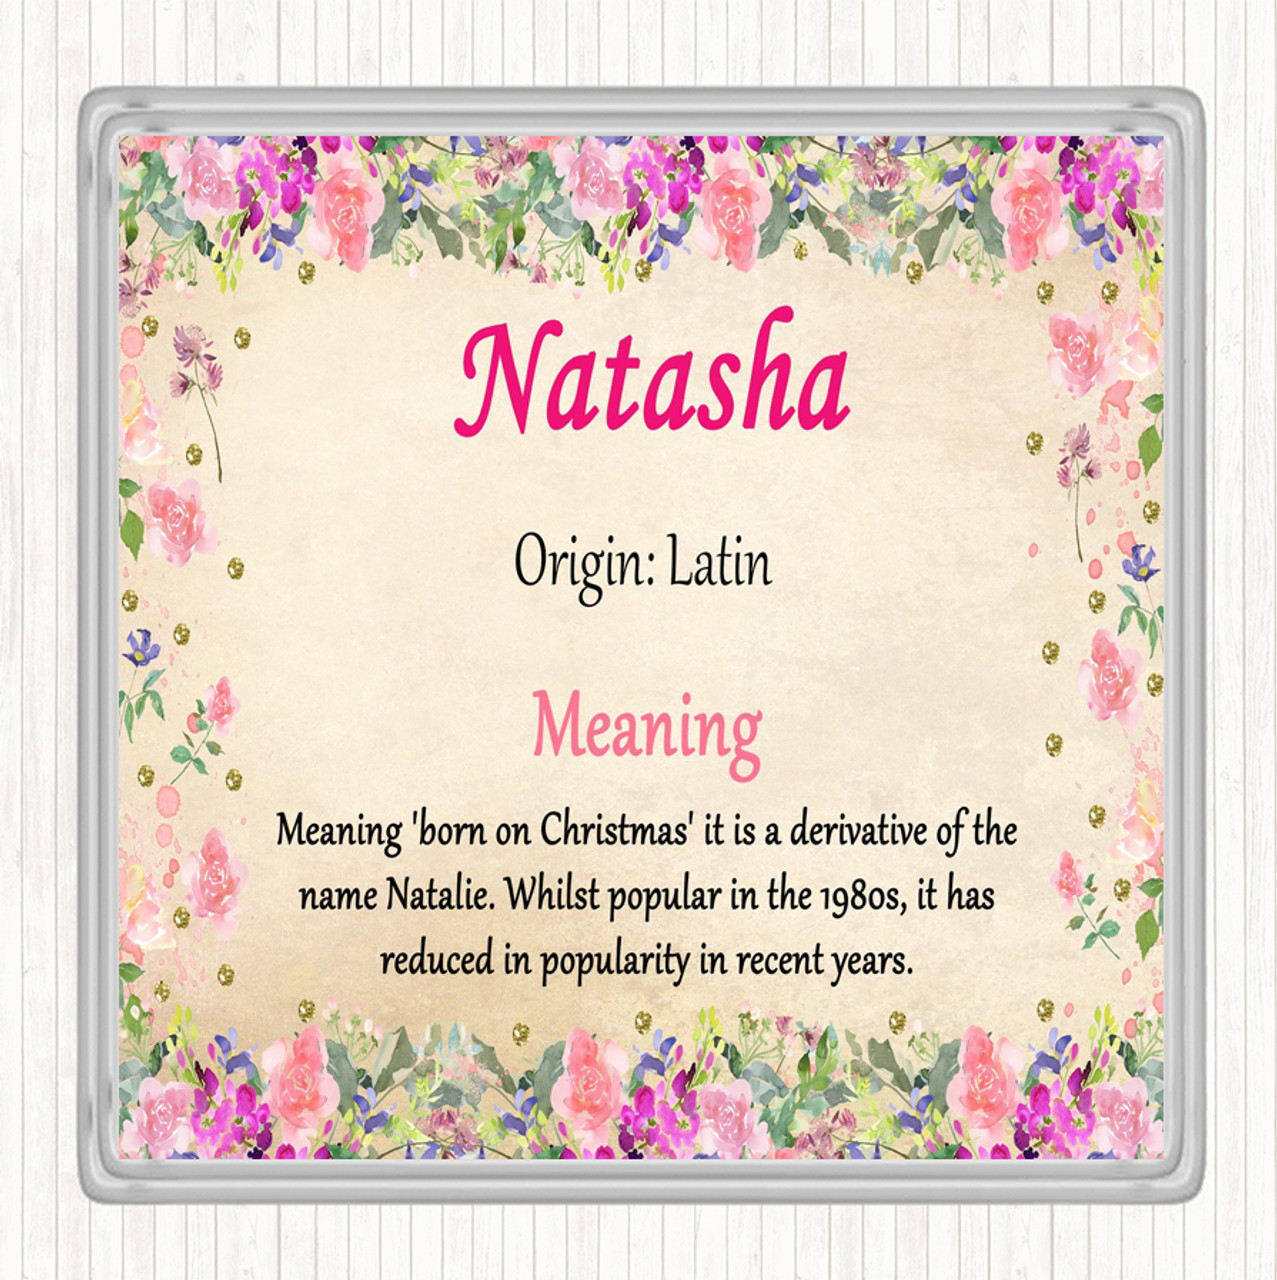 Natasha - Name Meaning: Natasha - một cái tên mang một ý nghĩa đặc biệt và phong phú. Hình ảnh sẽ giúp bạn hiểu thêm về nguồn gốc và ý nghĩa của cái tên này, đồng thời khám phá một số thông tin thú vị về những người mang tên Natasha.